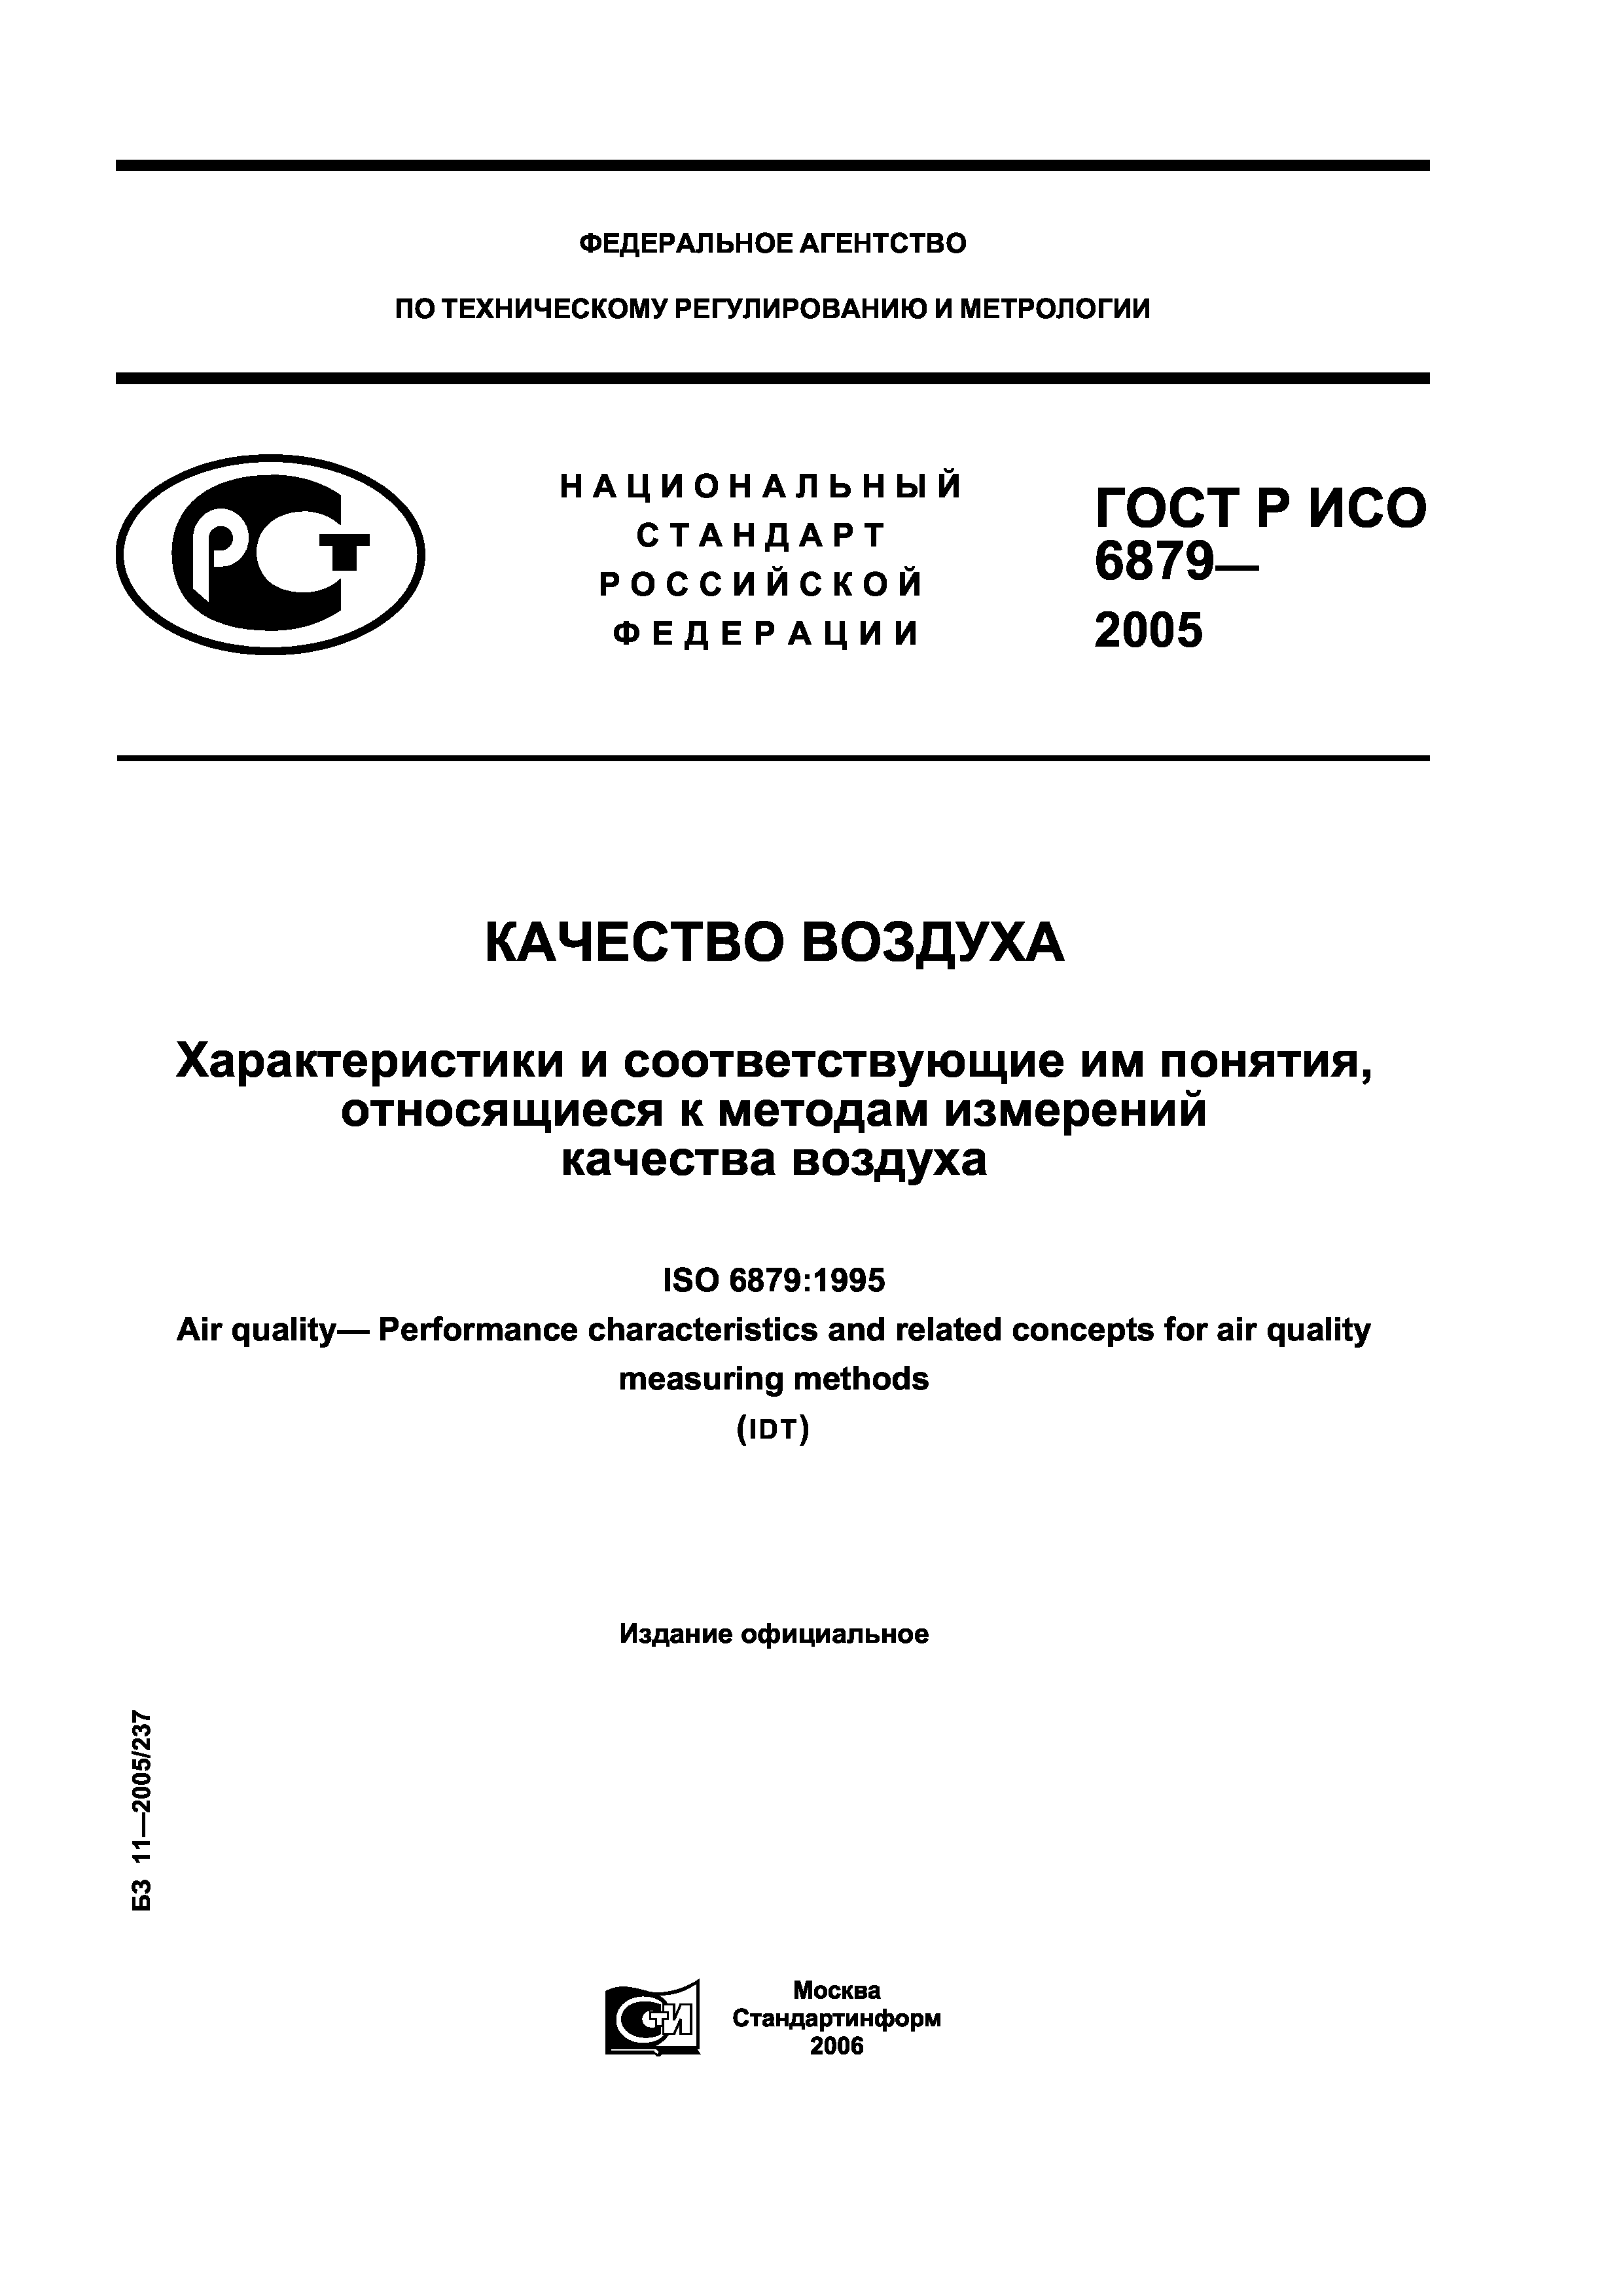 ГОСТ Р ИСО 6879-2005